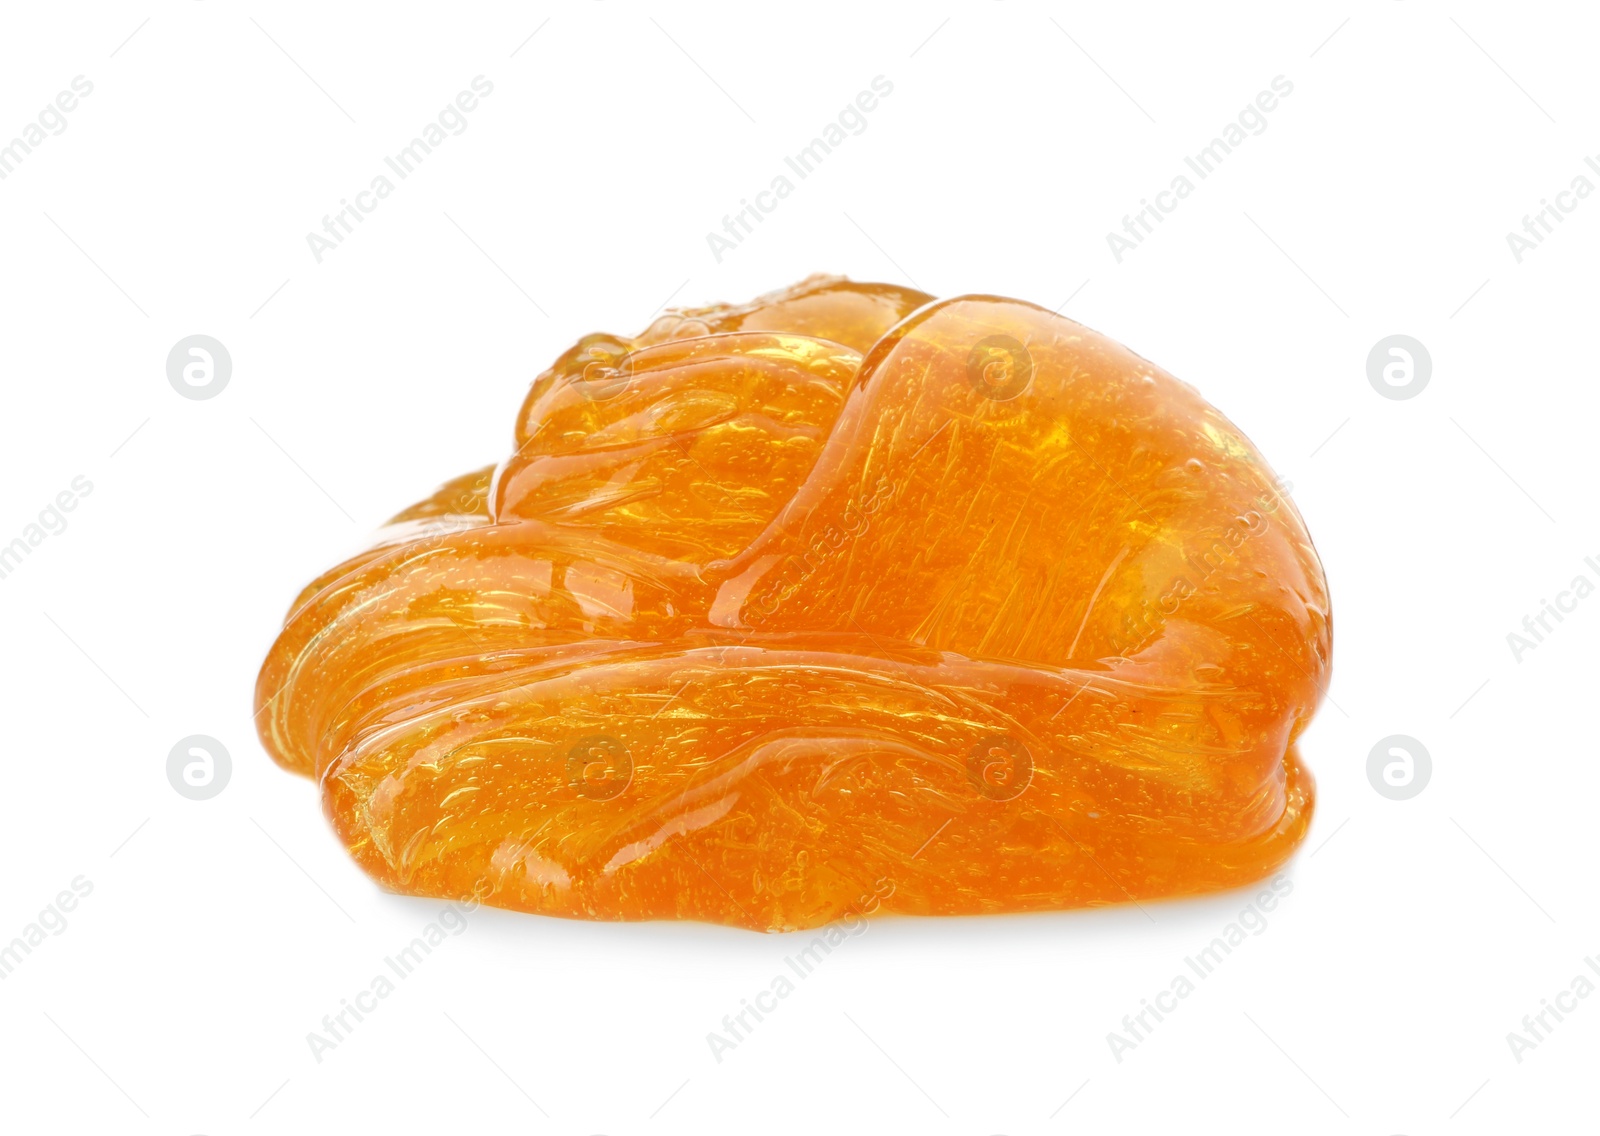 Photo of Orange slime isolated on white. Antistress toy